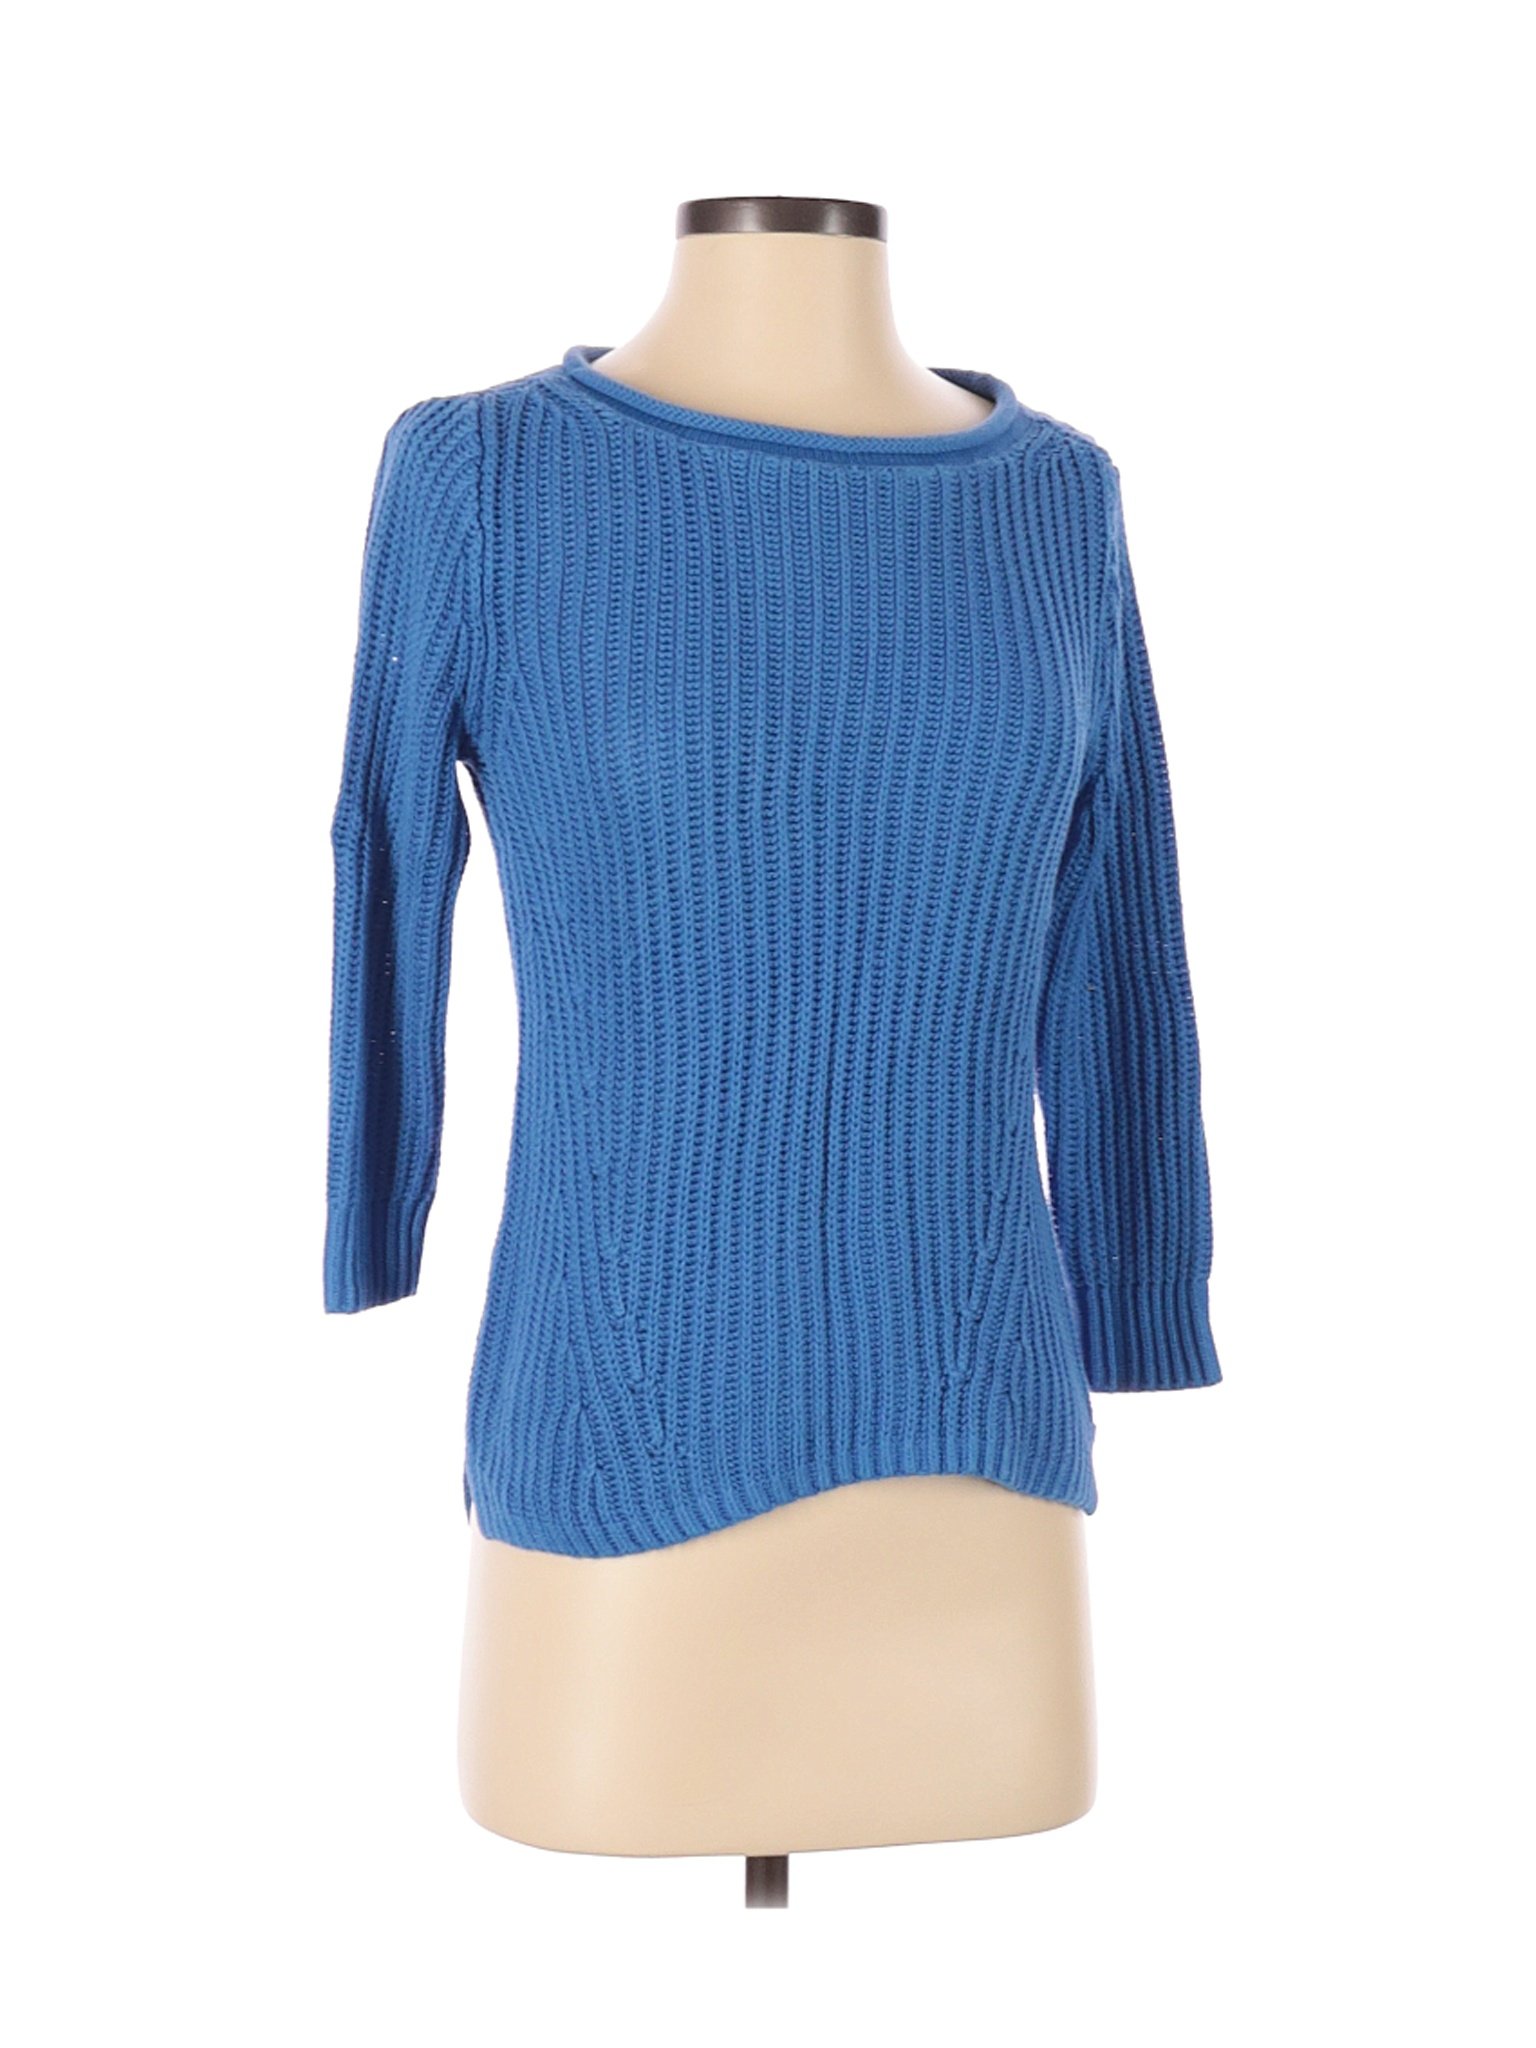 Lauren Jeans Co. Women Blue Pullover Sweater S | eBay